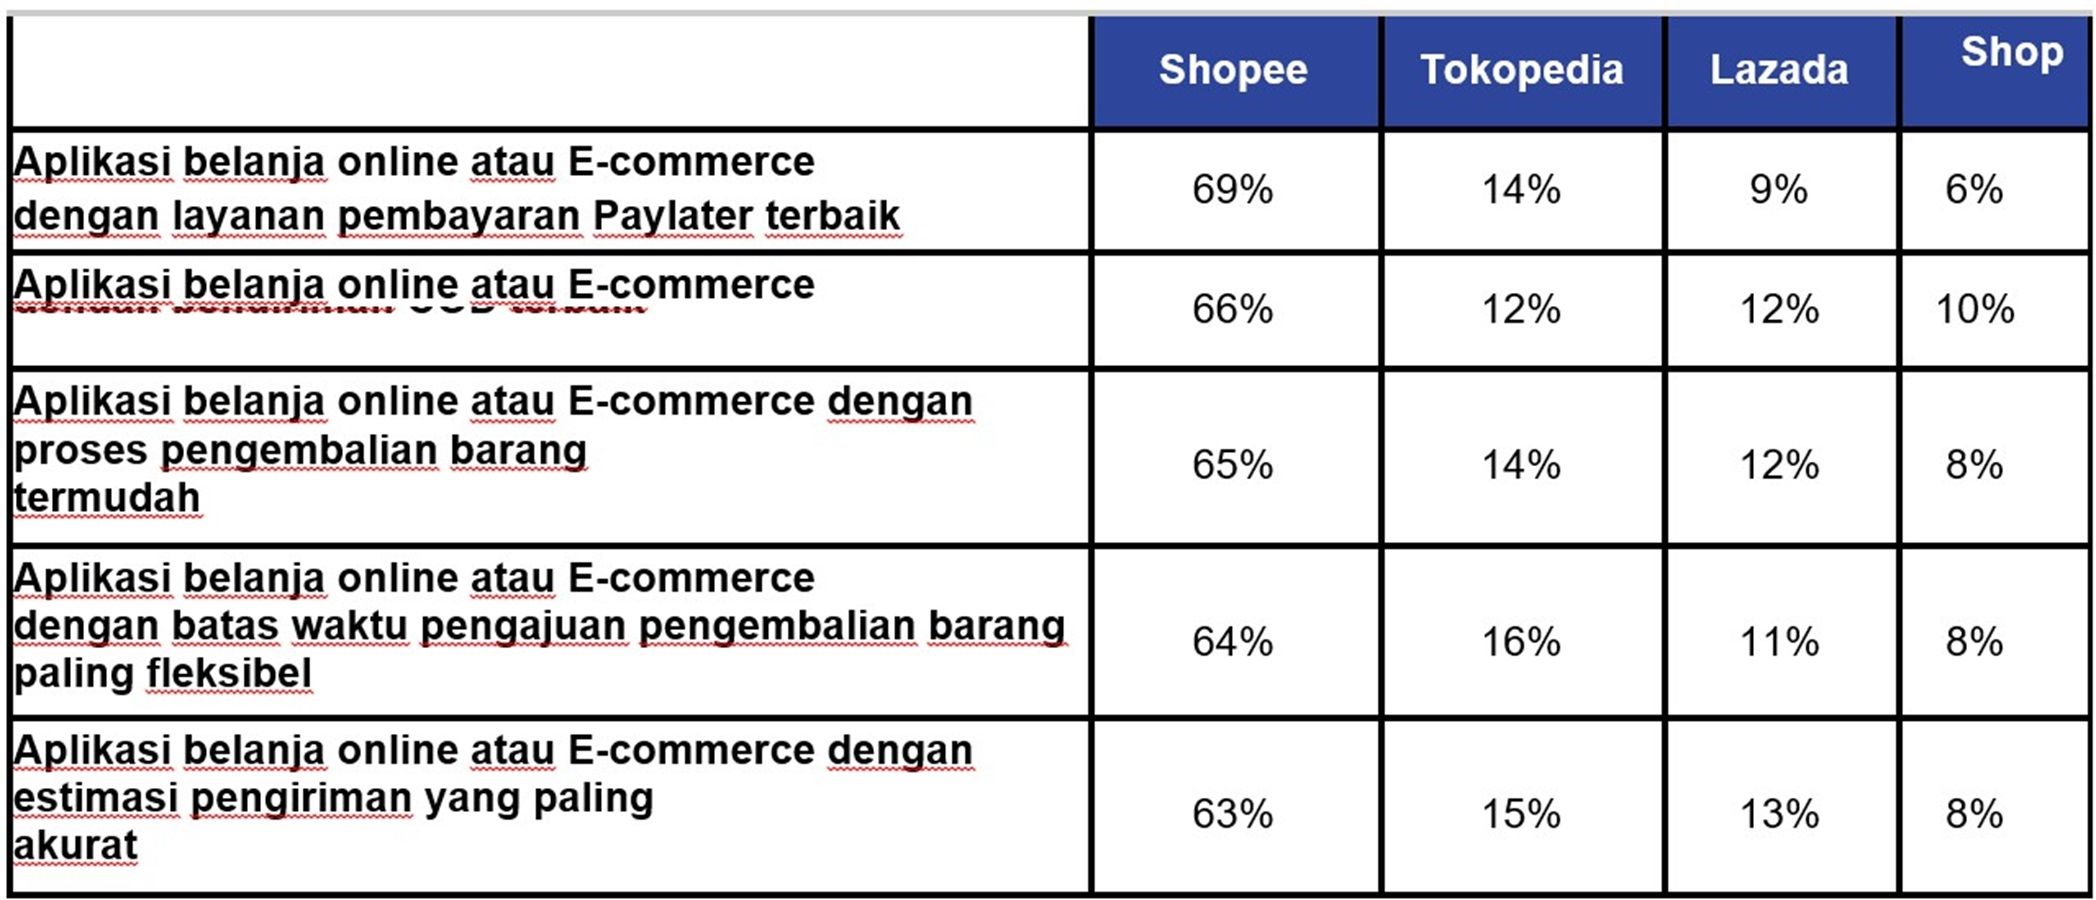 Tabel kepuasan konsumen. Prioritaskan Kepuasan Konsumen, Shopee Unggul di Riset IPSOS dan Jadi E-Commerce Paling Direkomendasikan